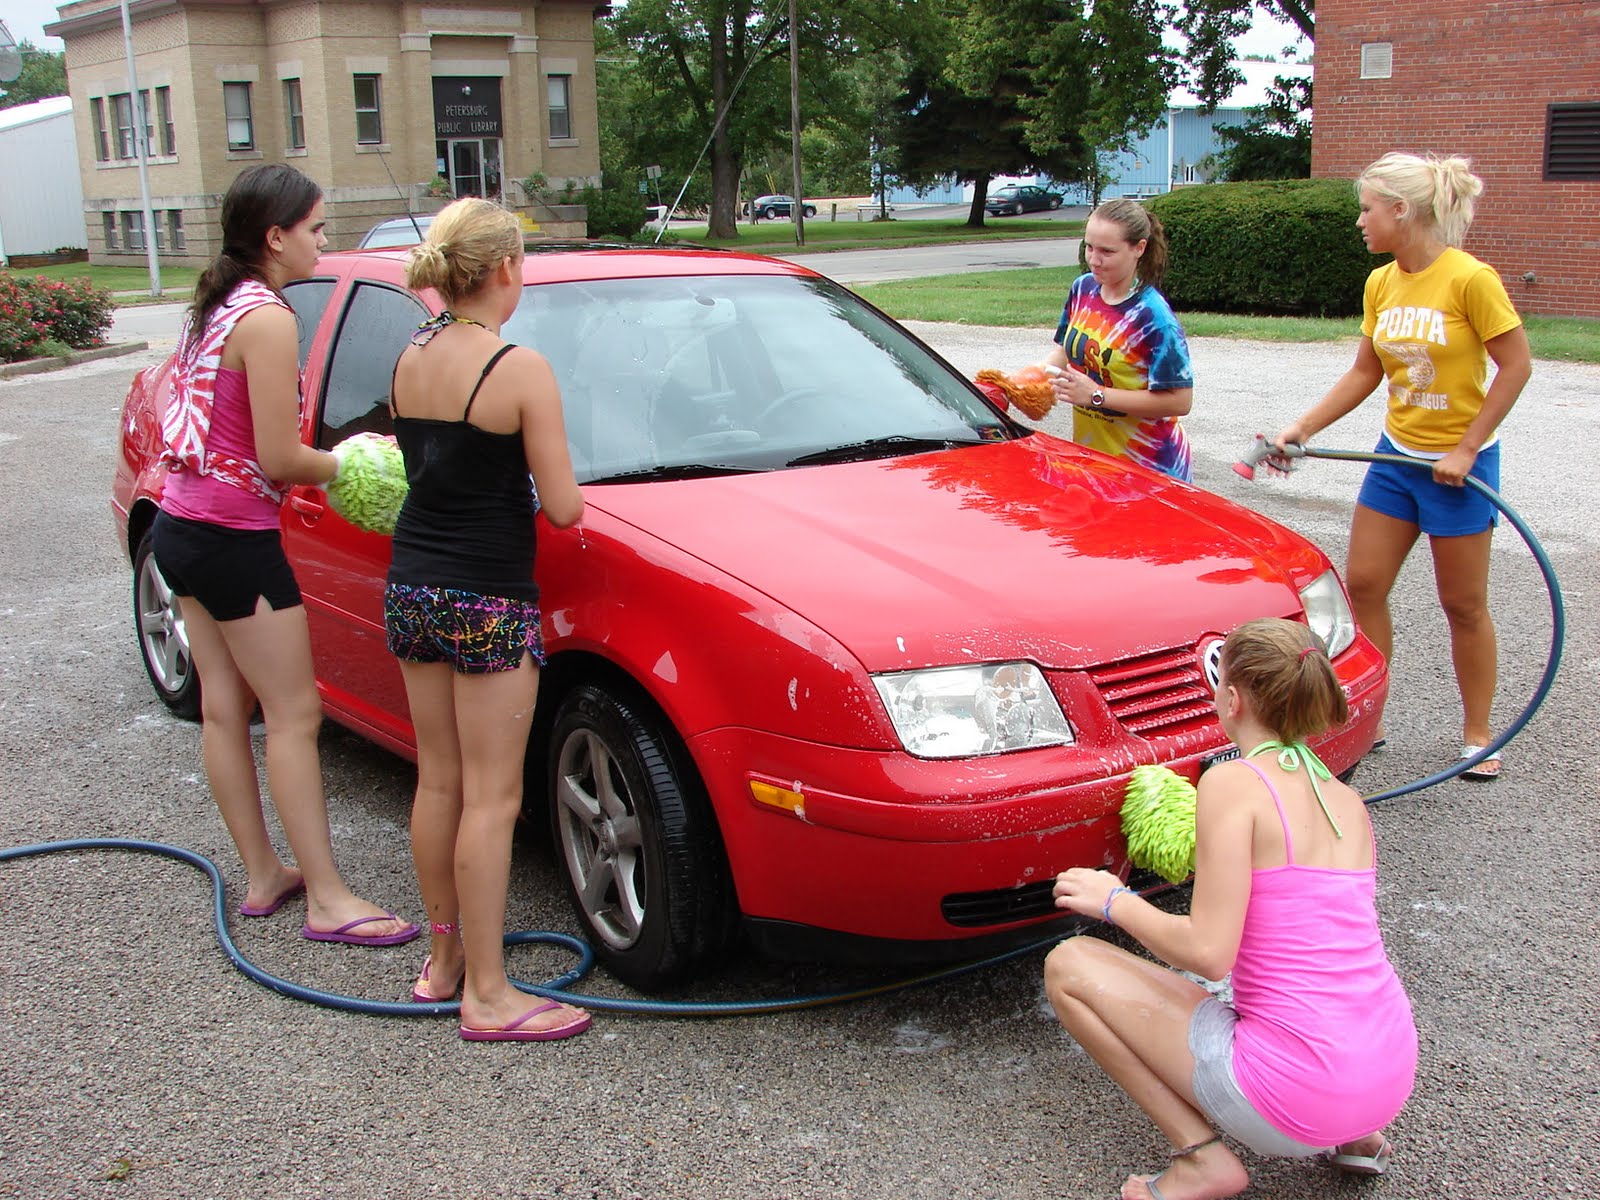 High school cheerleaders car wash bikini - Justimg.com